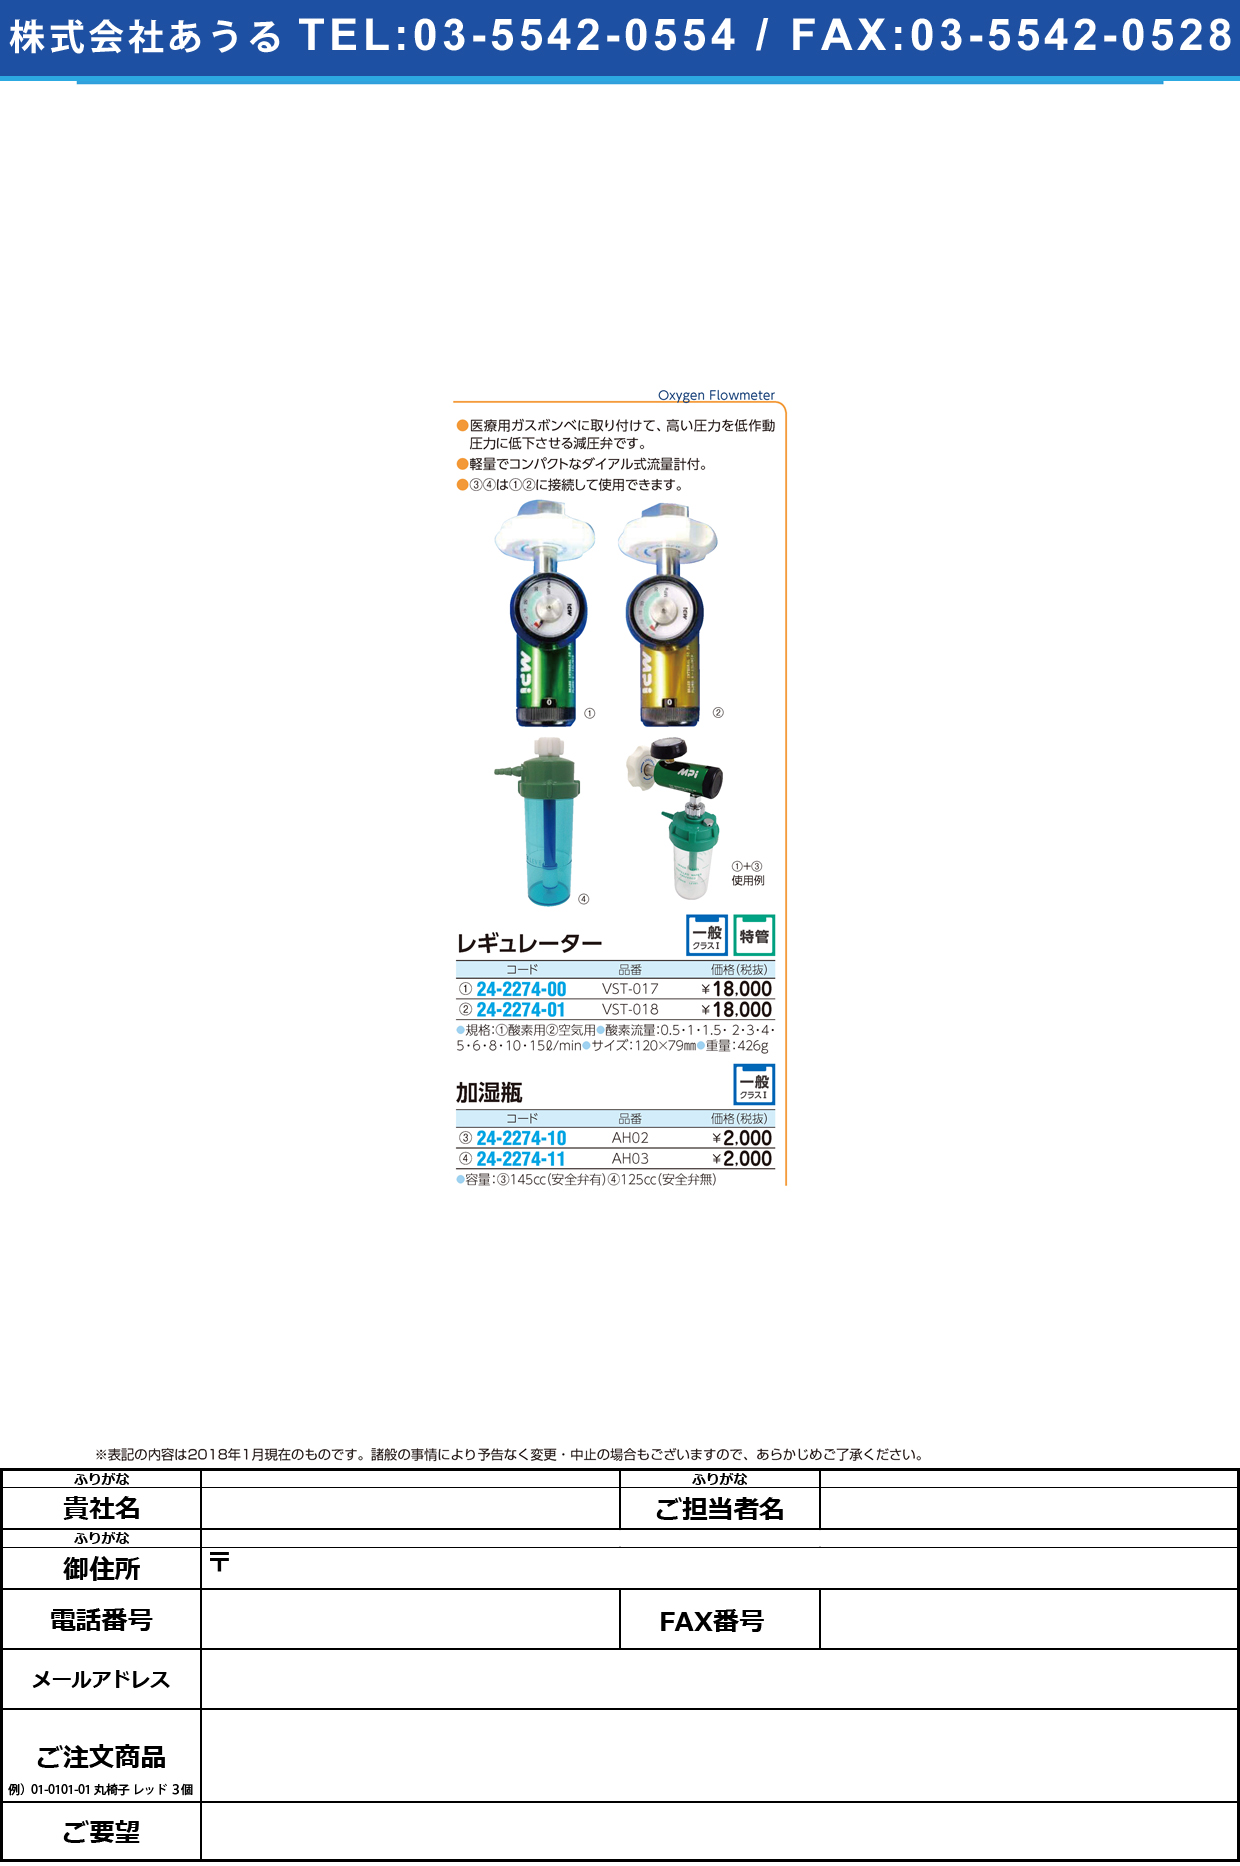 (24-2274-00)レギュレーター（酸素用） VST-017(ｸﾞﾘｰﾝ) ﾚｷﾞｭﾚｰﾀｰ(ｻﾝｿﾖｳ)【1台単位】【2018年カタログ商品】